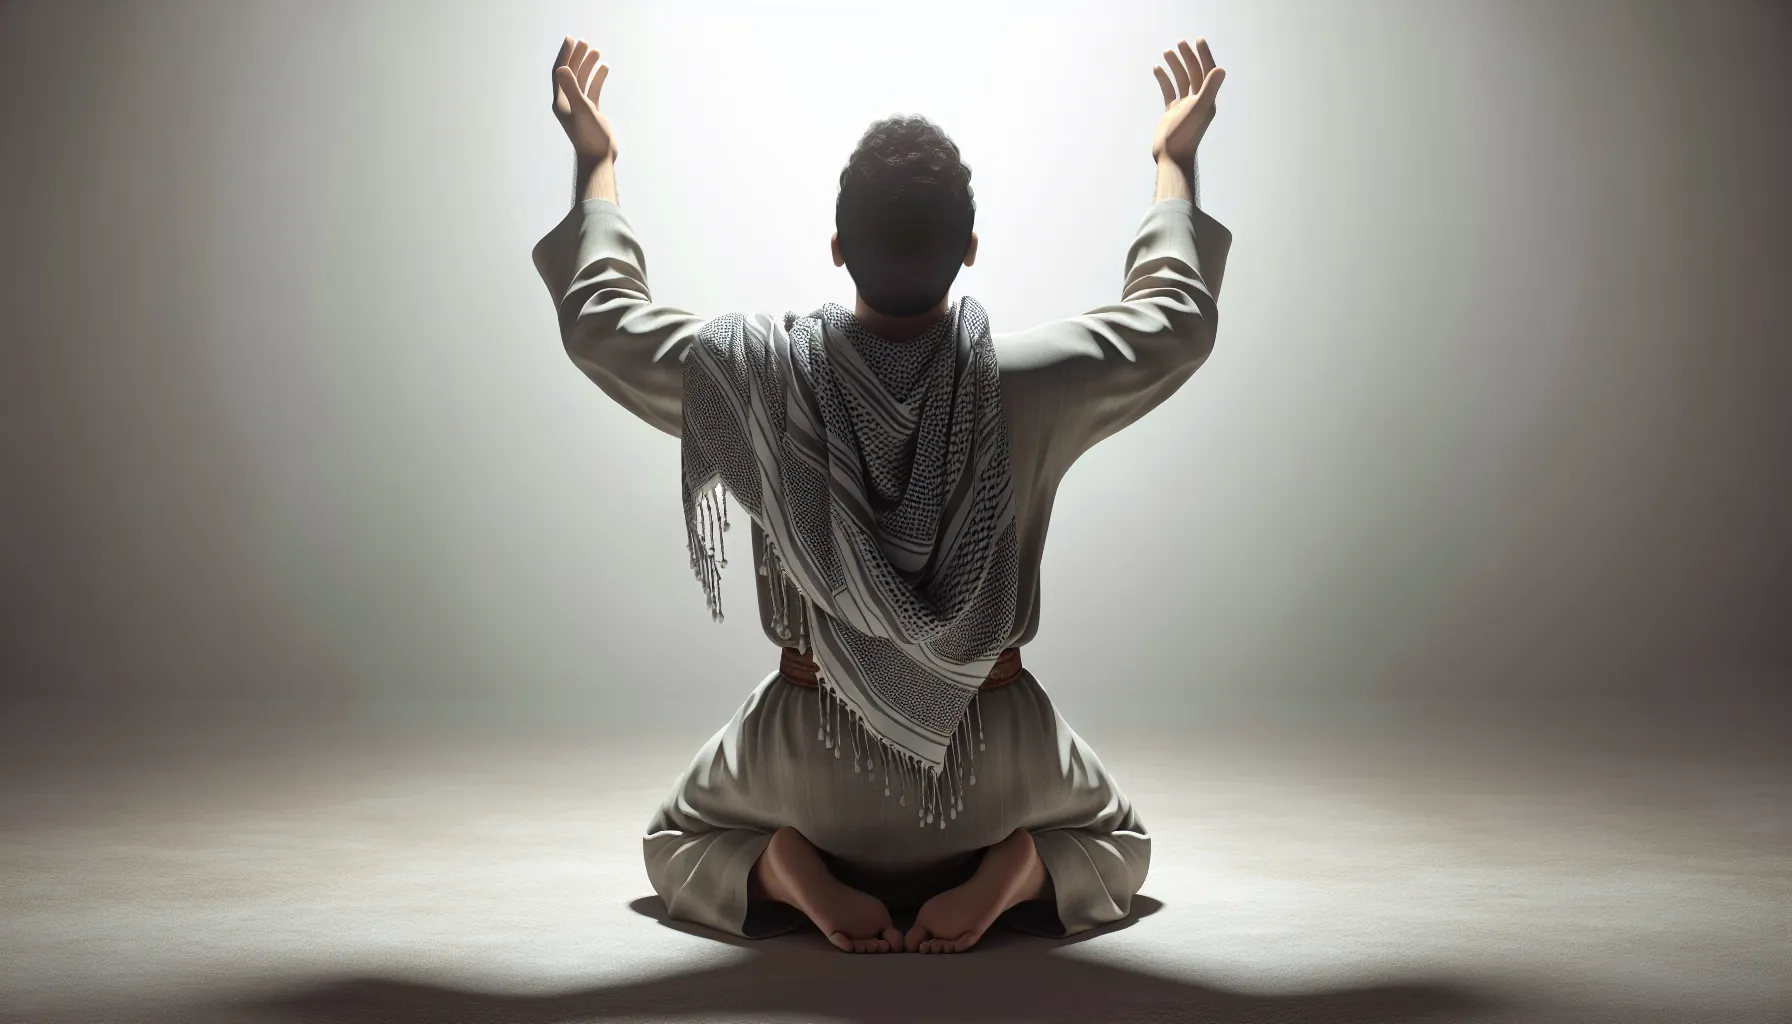 Imagen de un hombre arrodillado, con las manos levantadas hacia el cielo en actitud de rendición y adoración, representando la sumisión a Dios conforme a la enseñanza bíblica.